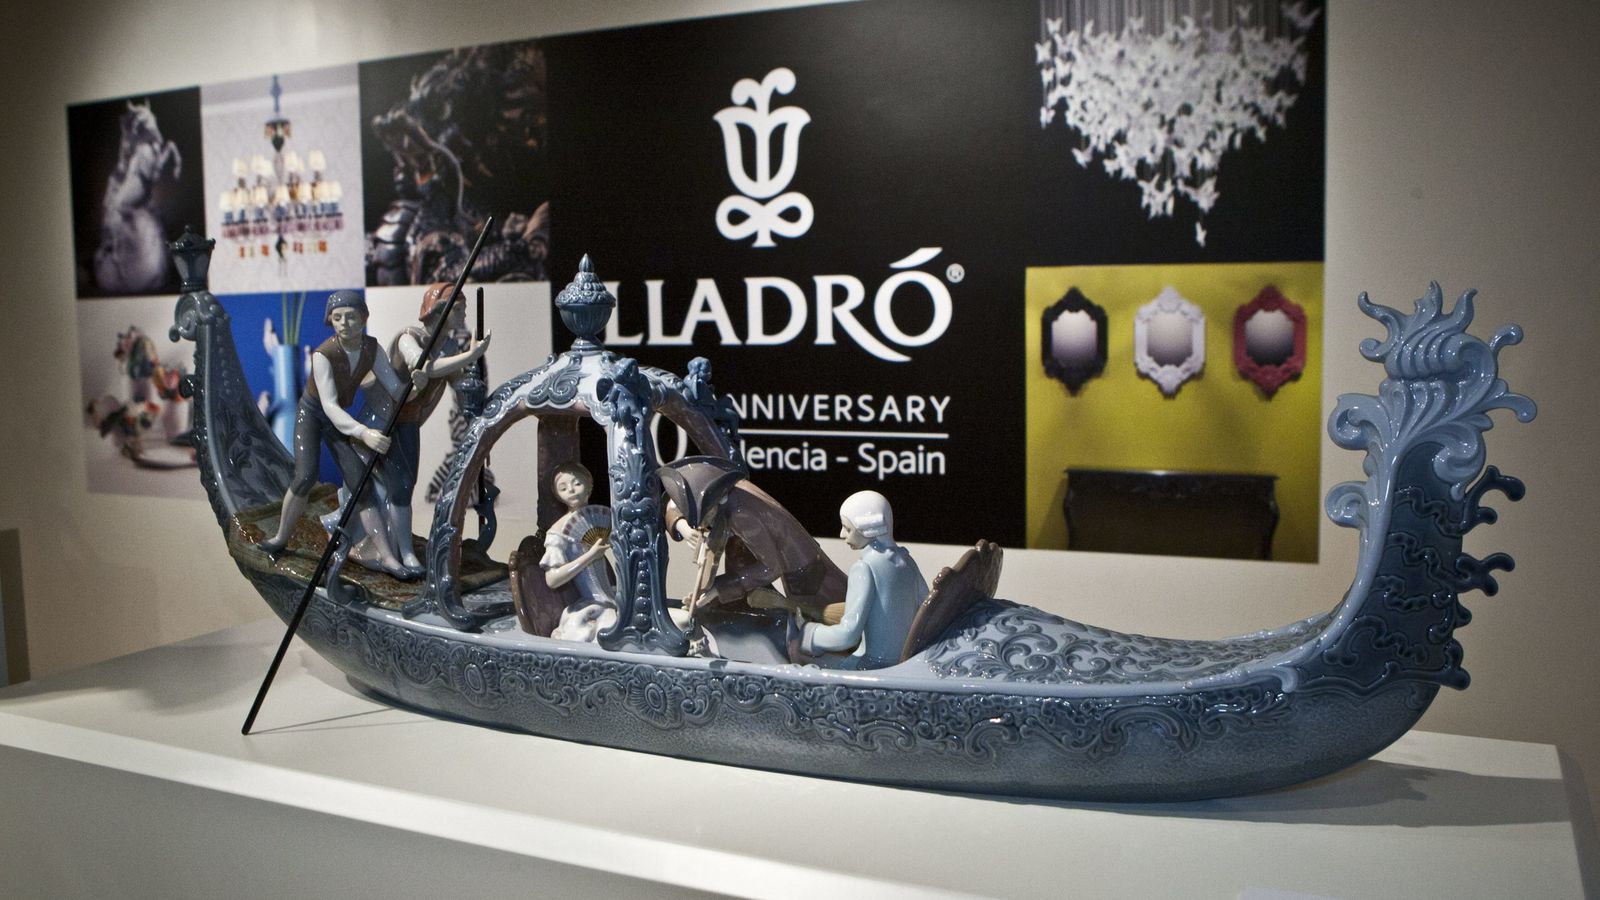 Foto: Una de las piezas expuestas en el acto de celebración del 60 aniversario de la firma española Lladró. (EFE)